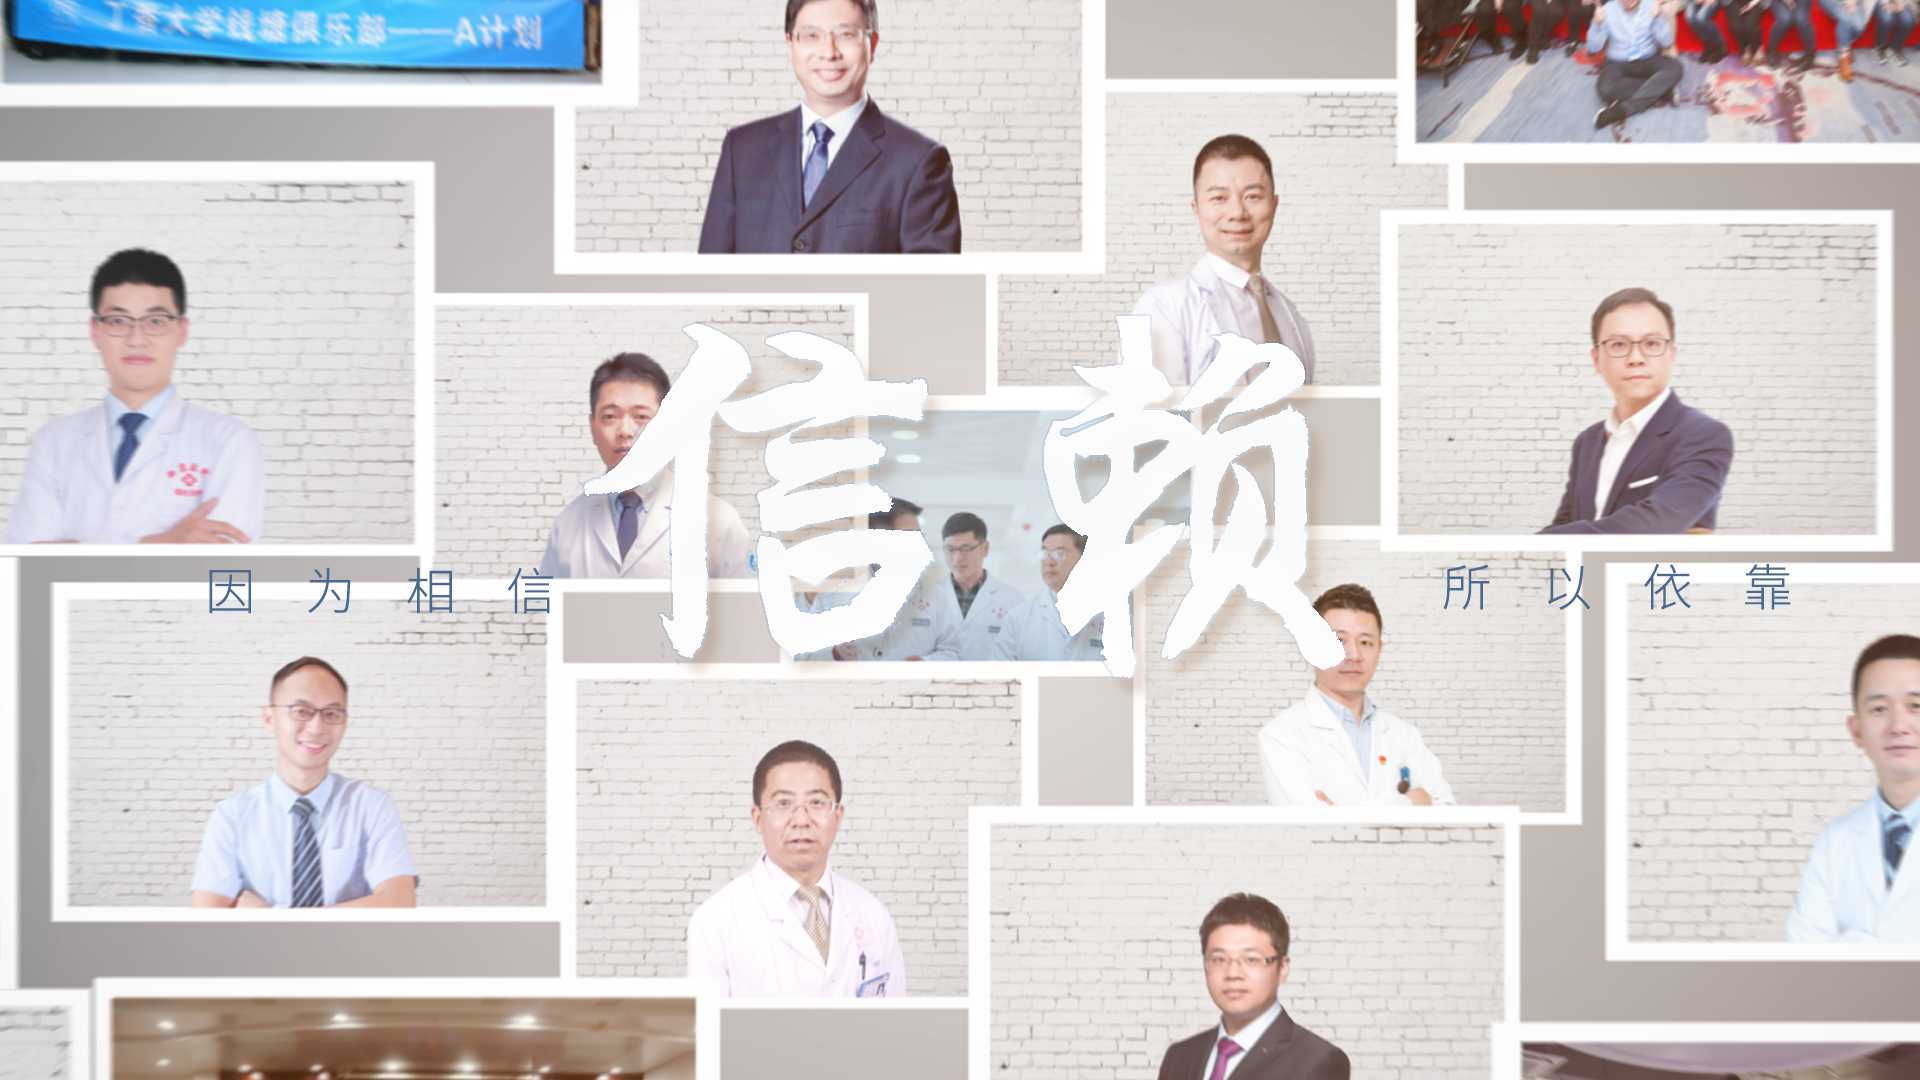 2021年中国医生大会主题短片《信赖》